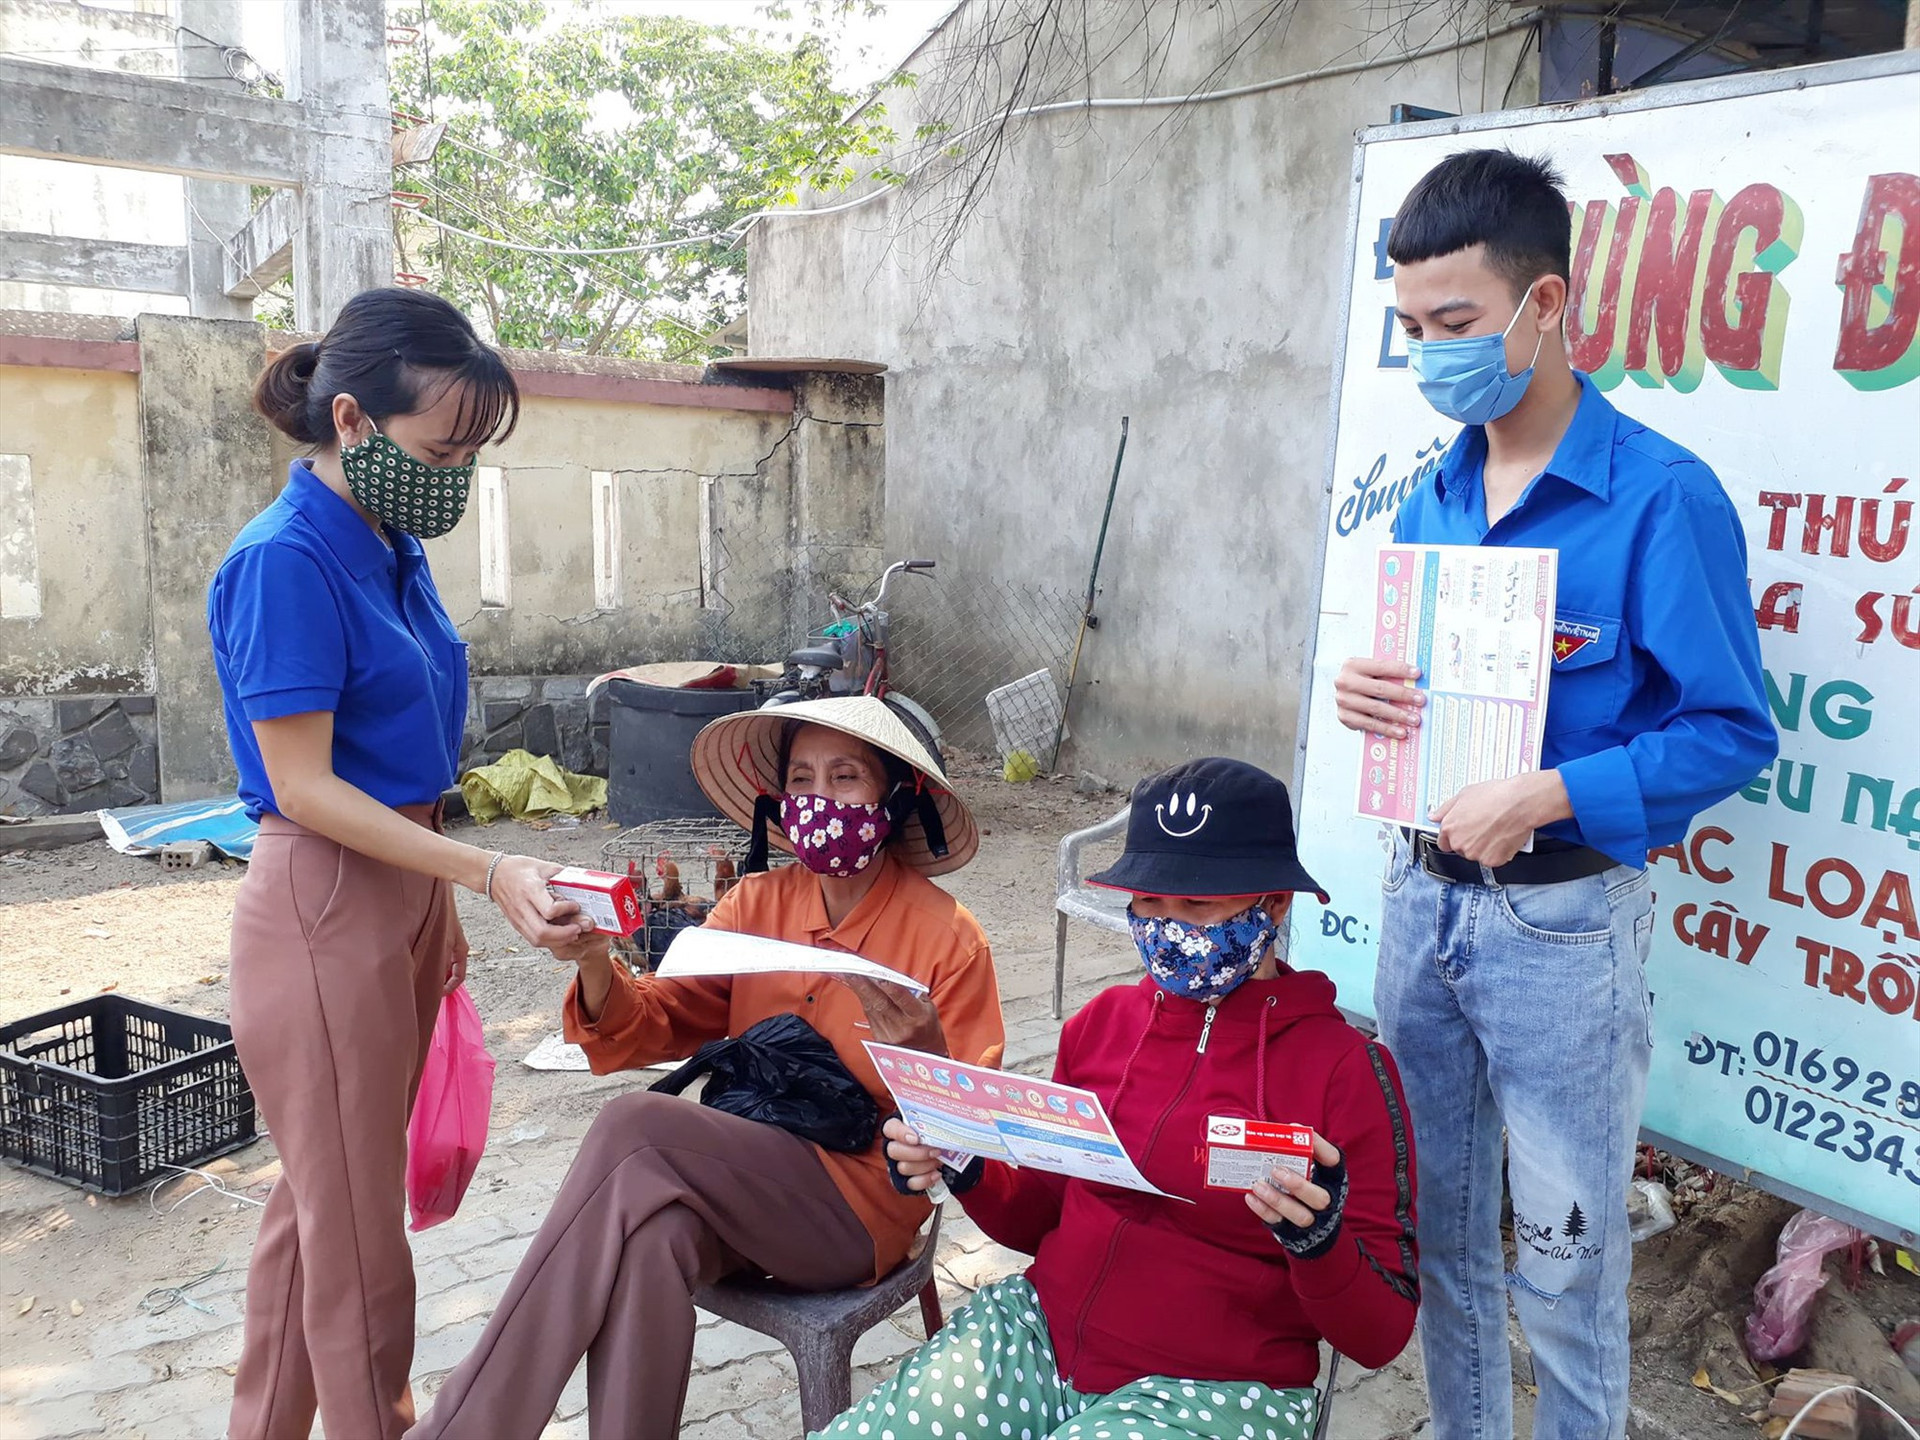 Đoàn viên thanh niên thị trấn Hương An cấp phát tờ rơi hướng dẫn các biện pháp phòng chống dịch bệnh Covid-19 cho người dân. Ảnh: T.P